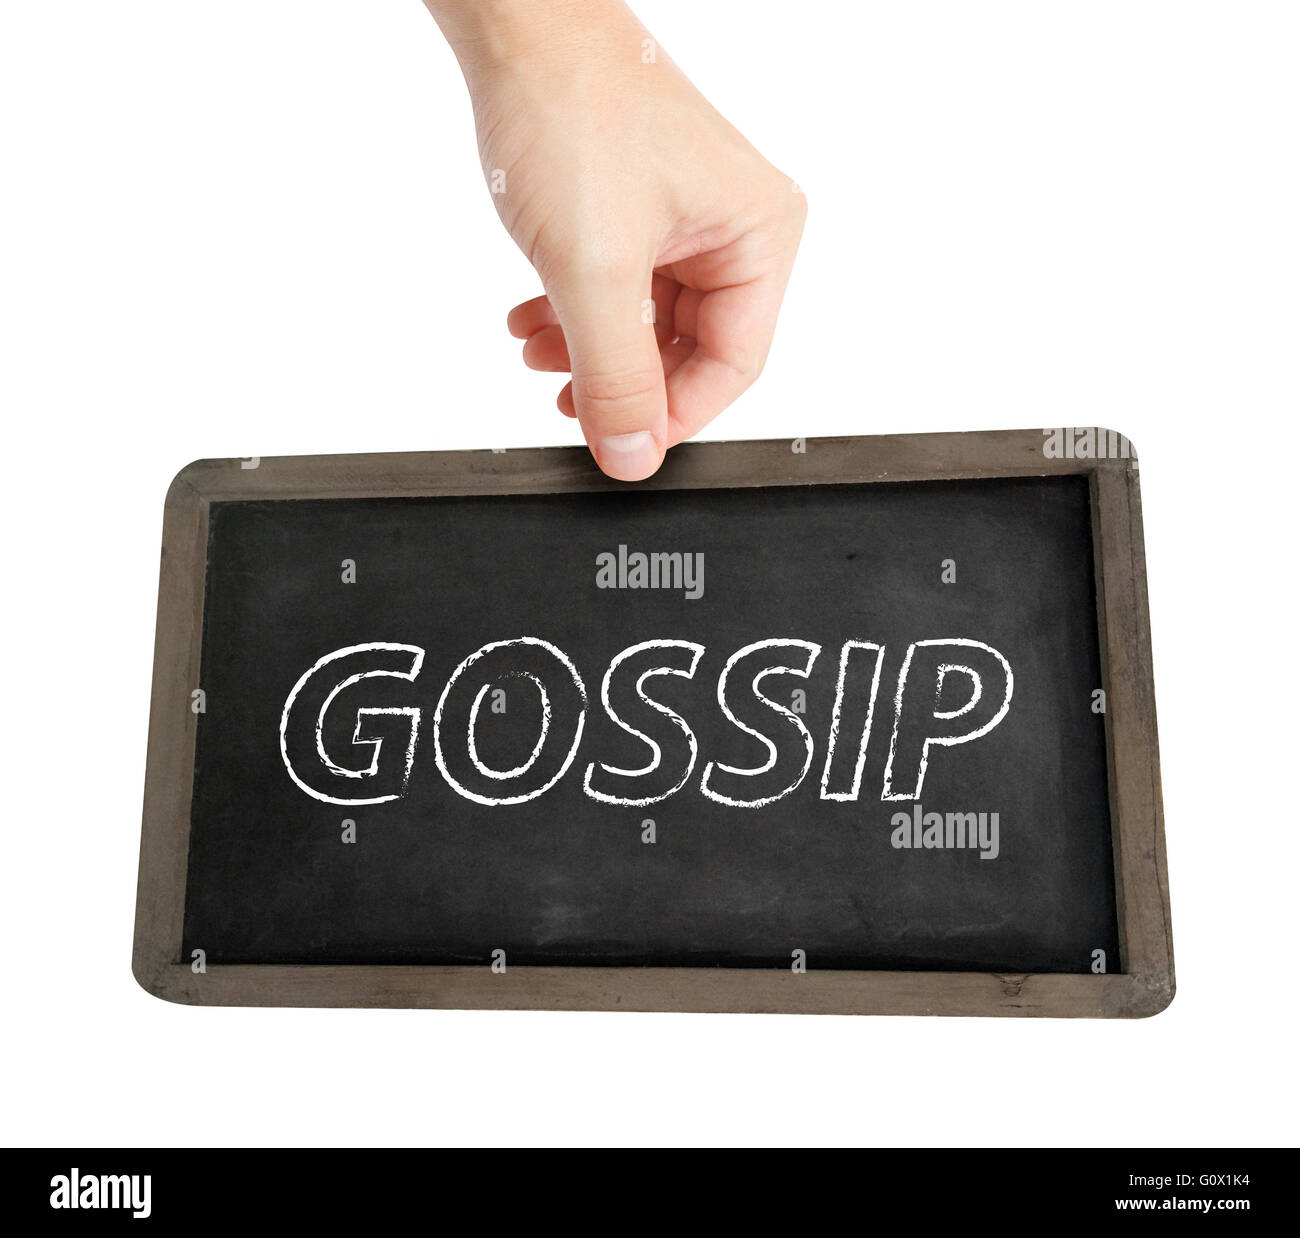 Gossip written on a blackboard Stock Photo